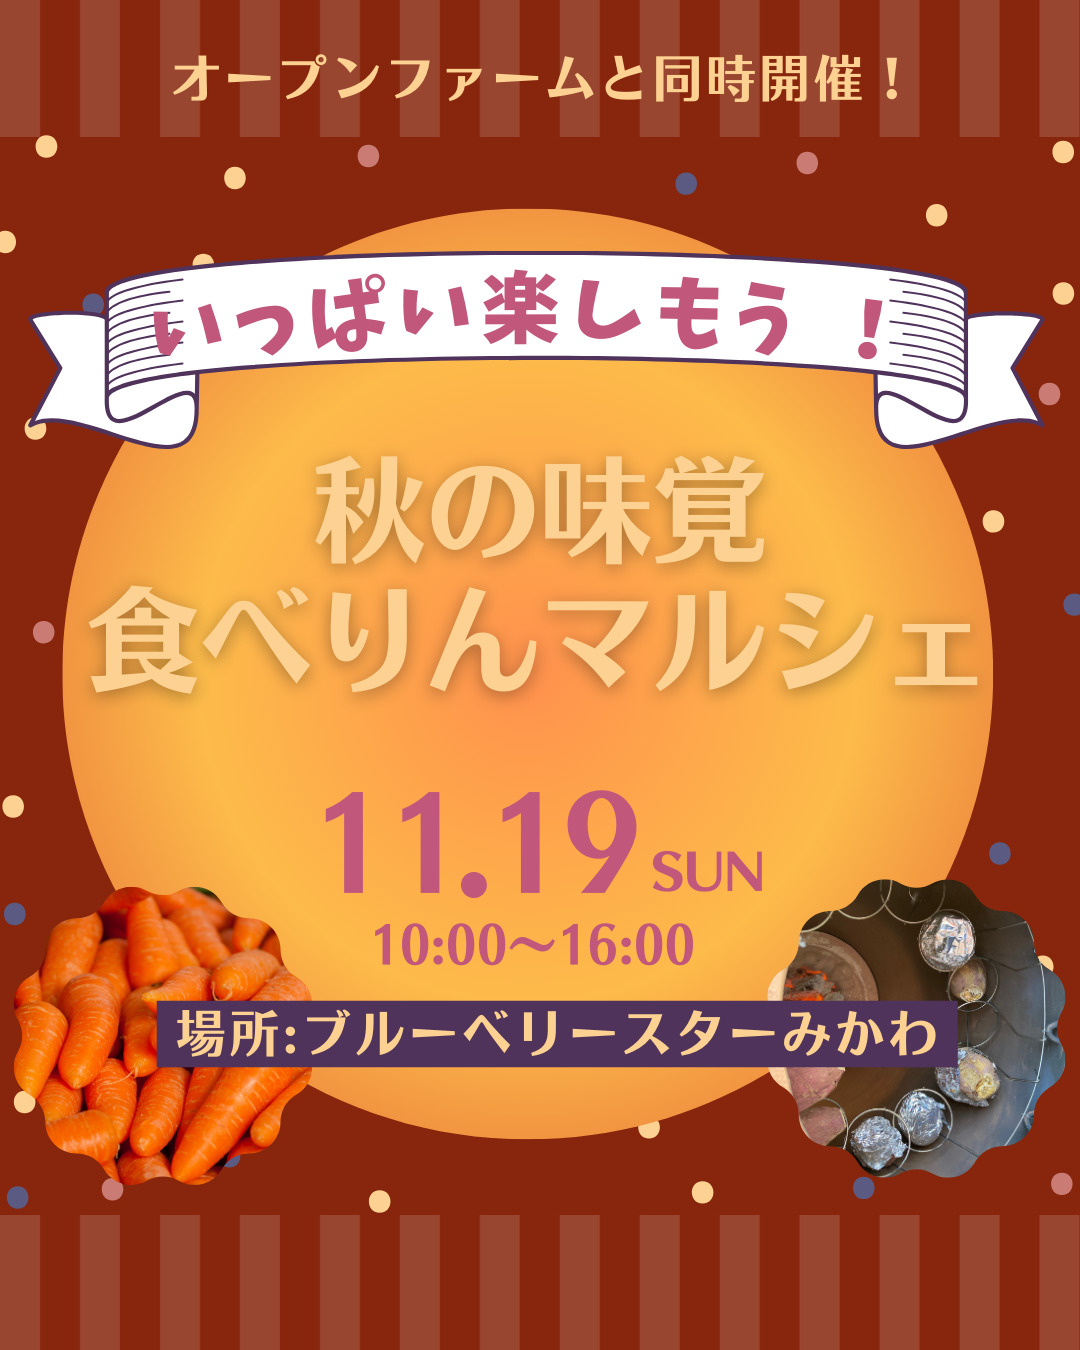 11月19日(日)秋の味覚食べりんマルシェ開催します